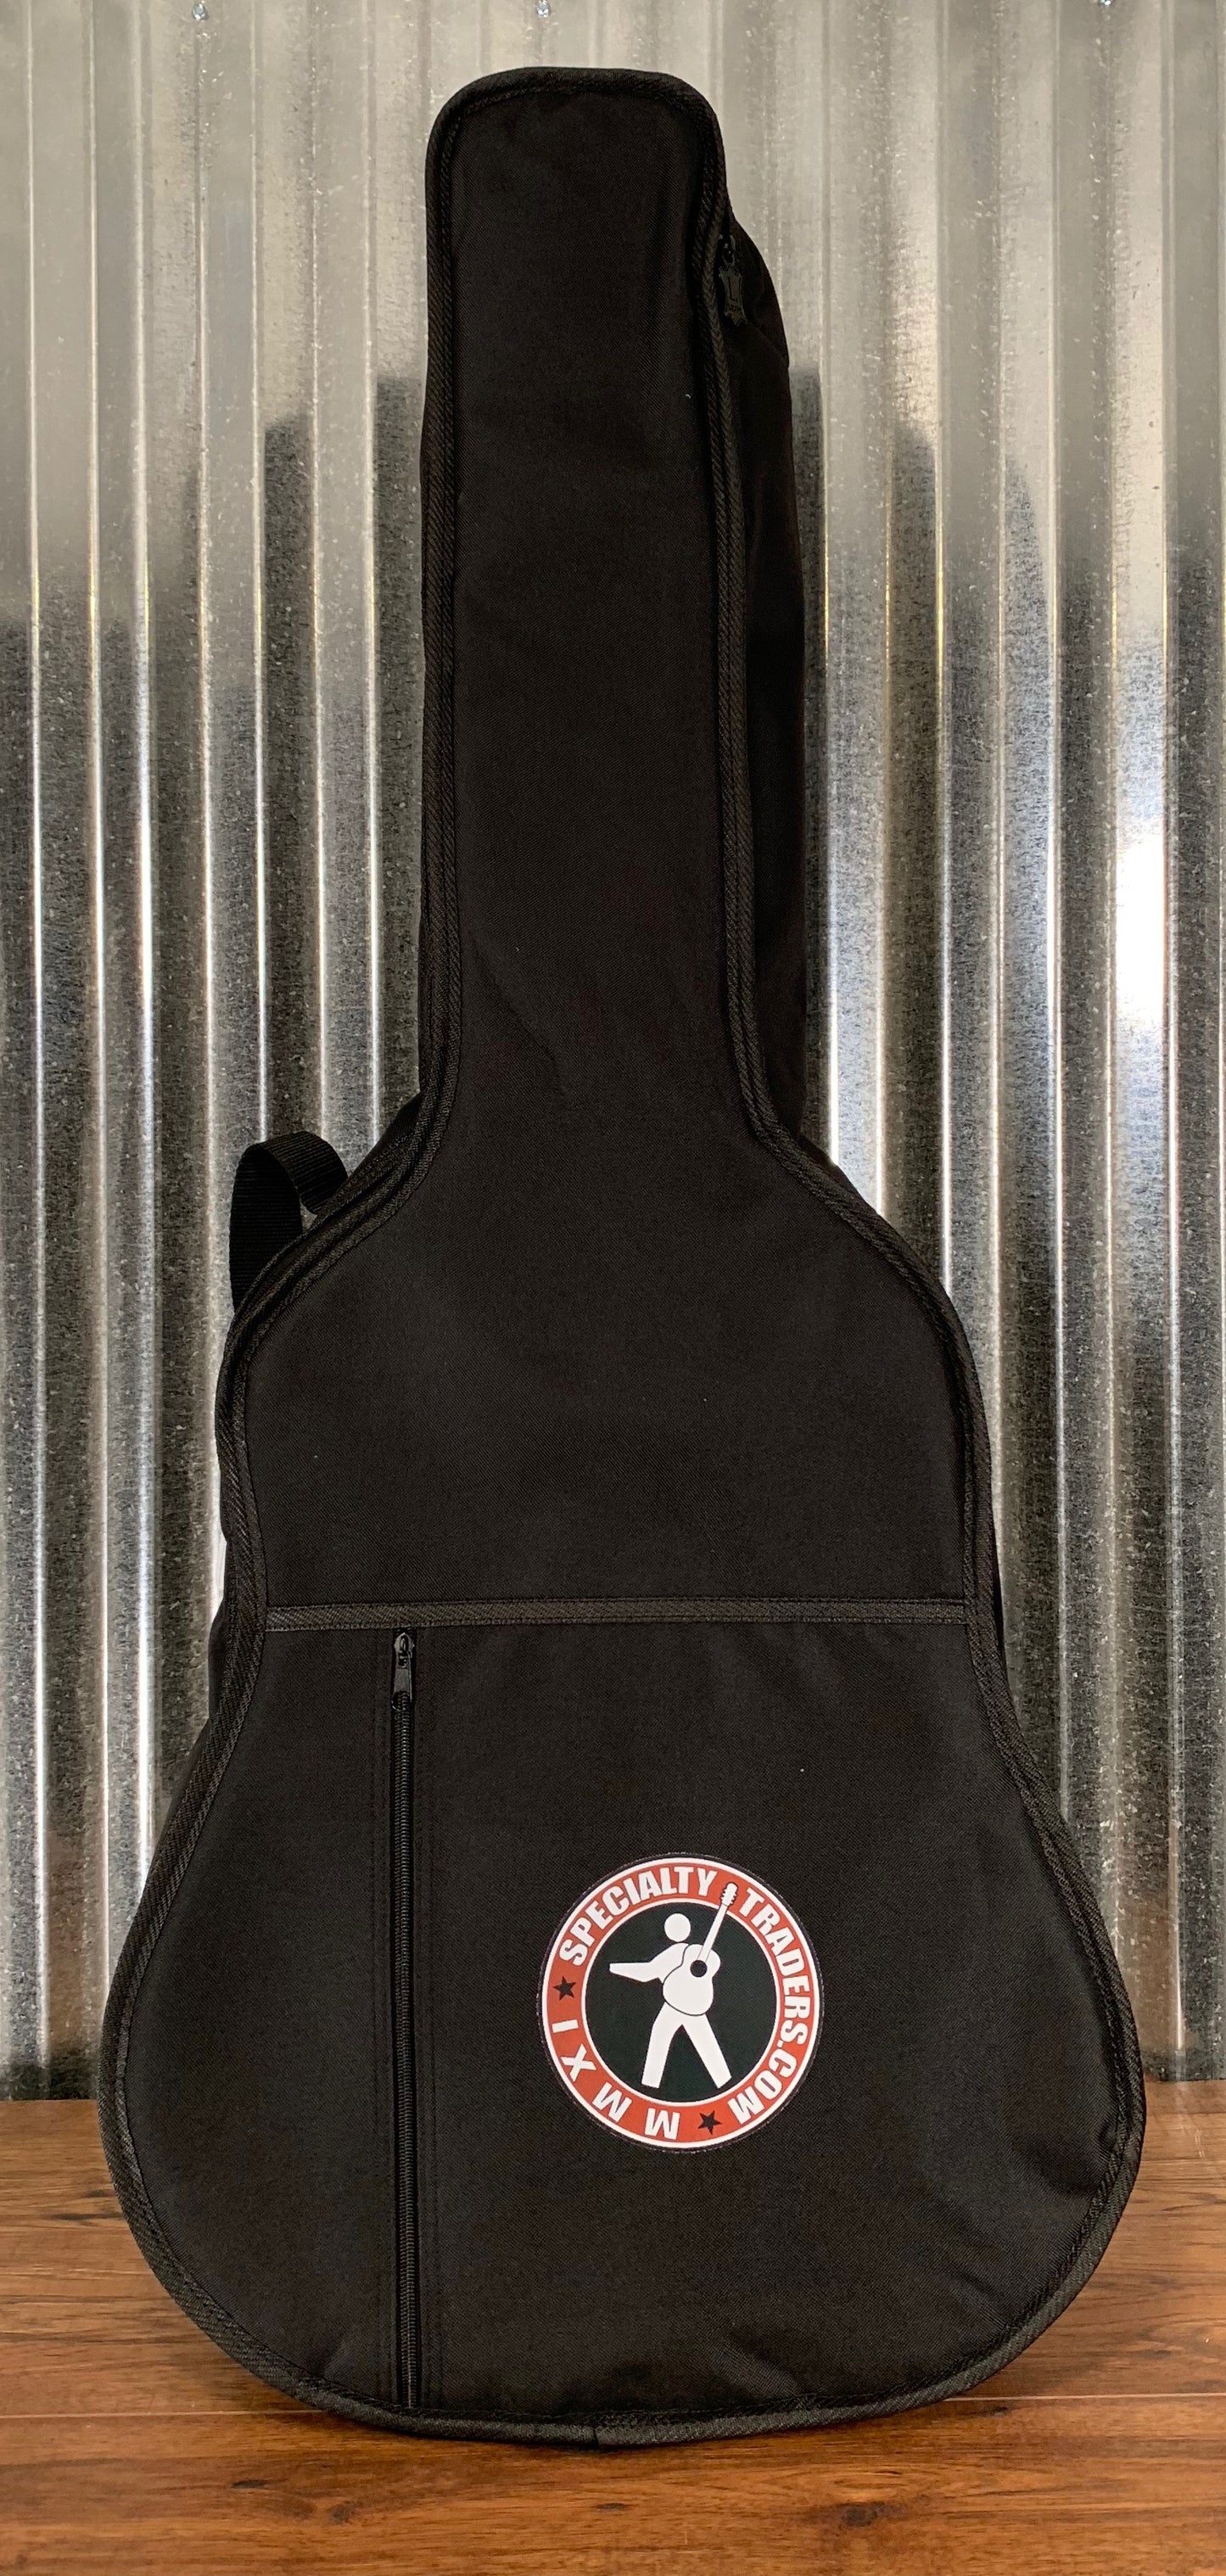 ESP LTD TL-6 Black Thin Acoustic Electric Guitar & Bag LTL6BLK #1809 Demo